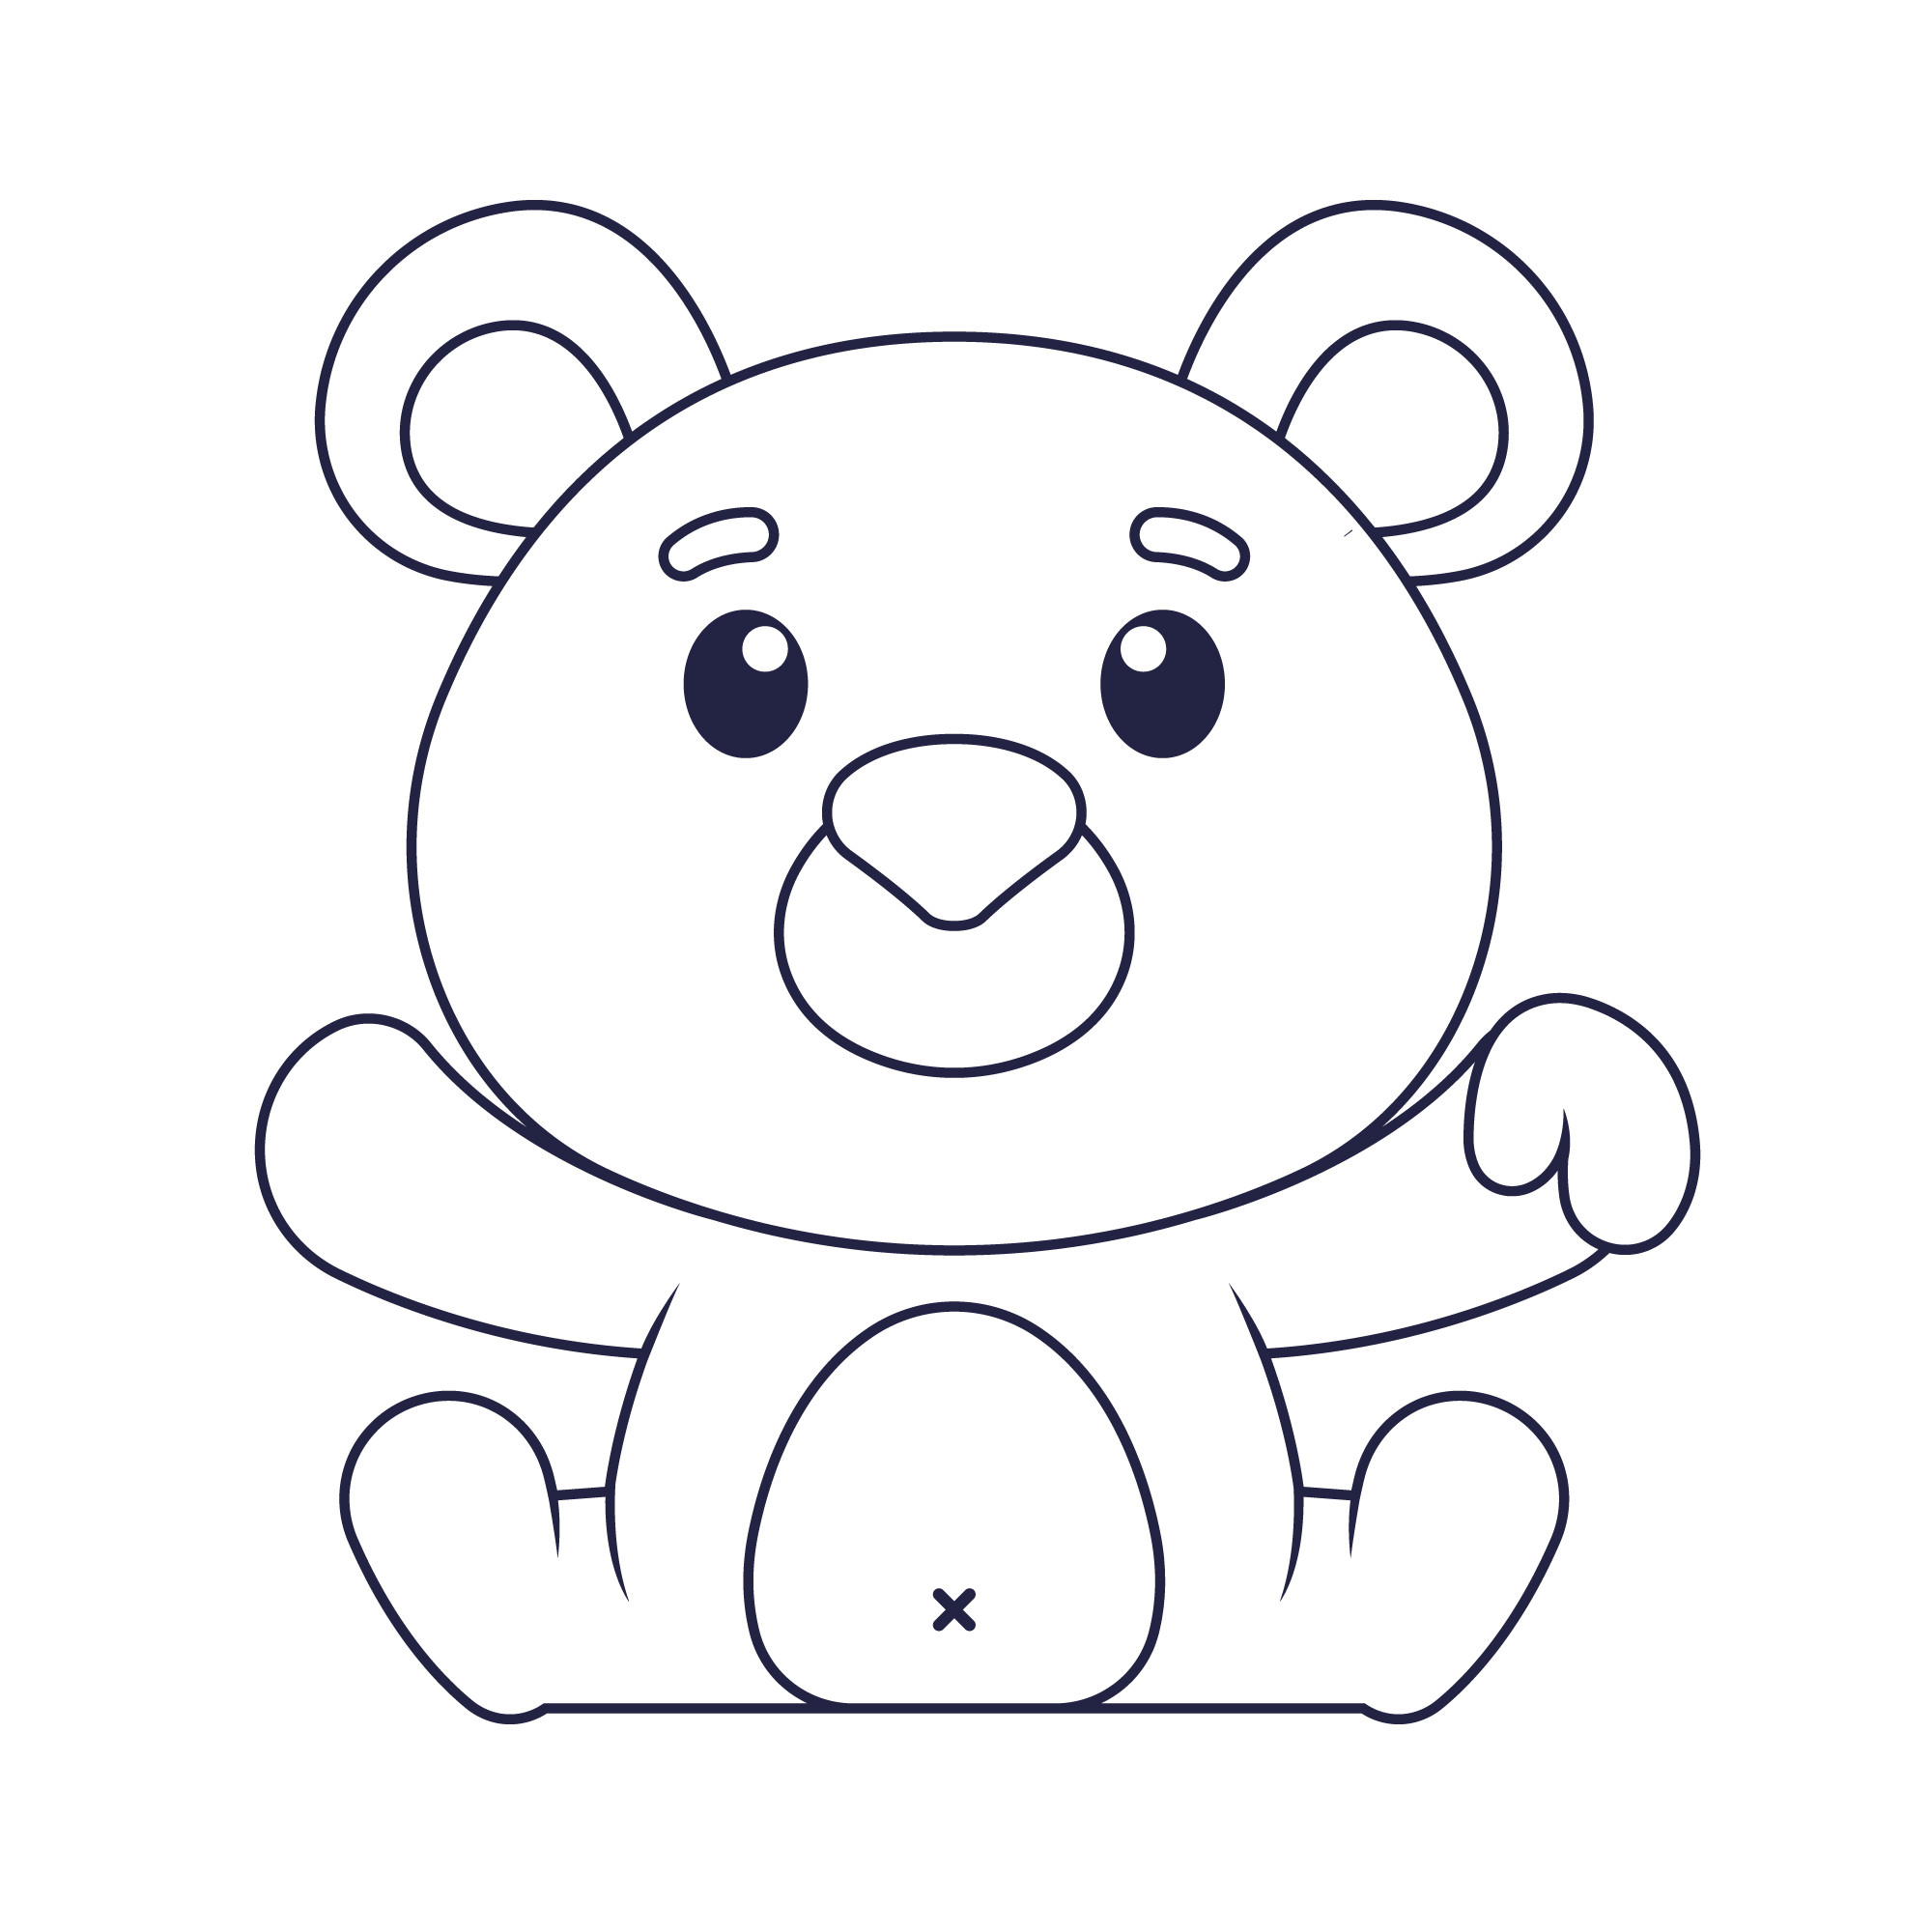 Раскраска для детей: игрушка кукла медведь